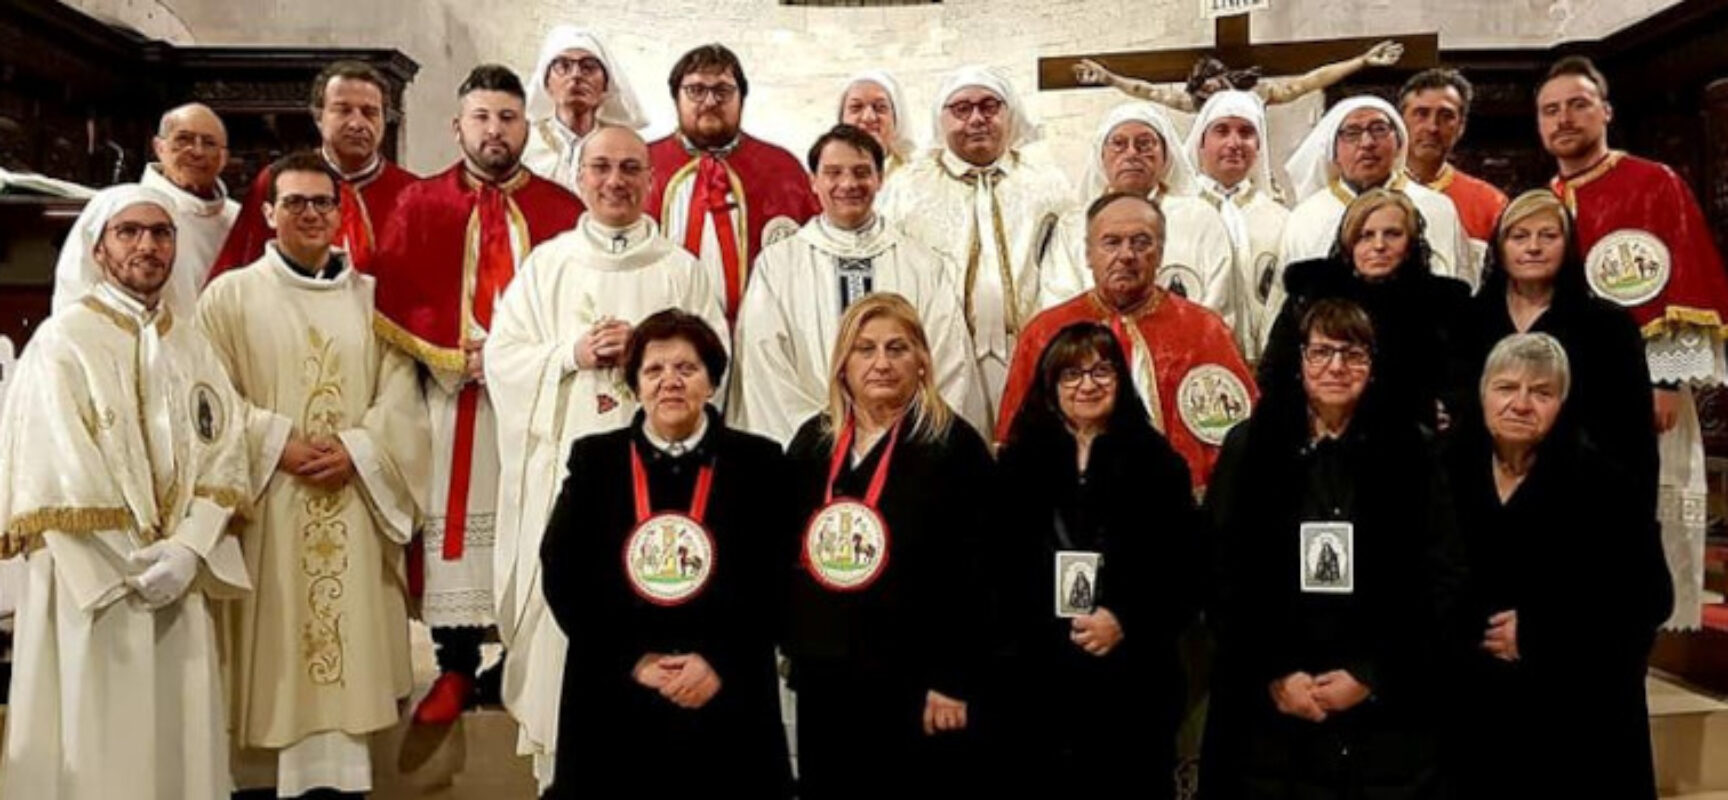 Il Venerdì Santo a Bisceglie: tradizione e novità con la collaborazione tra due confraternite